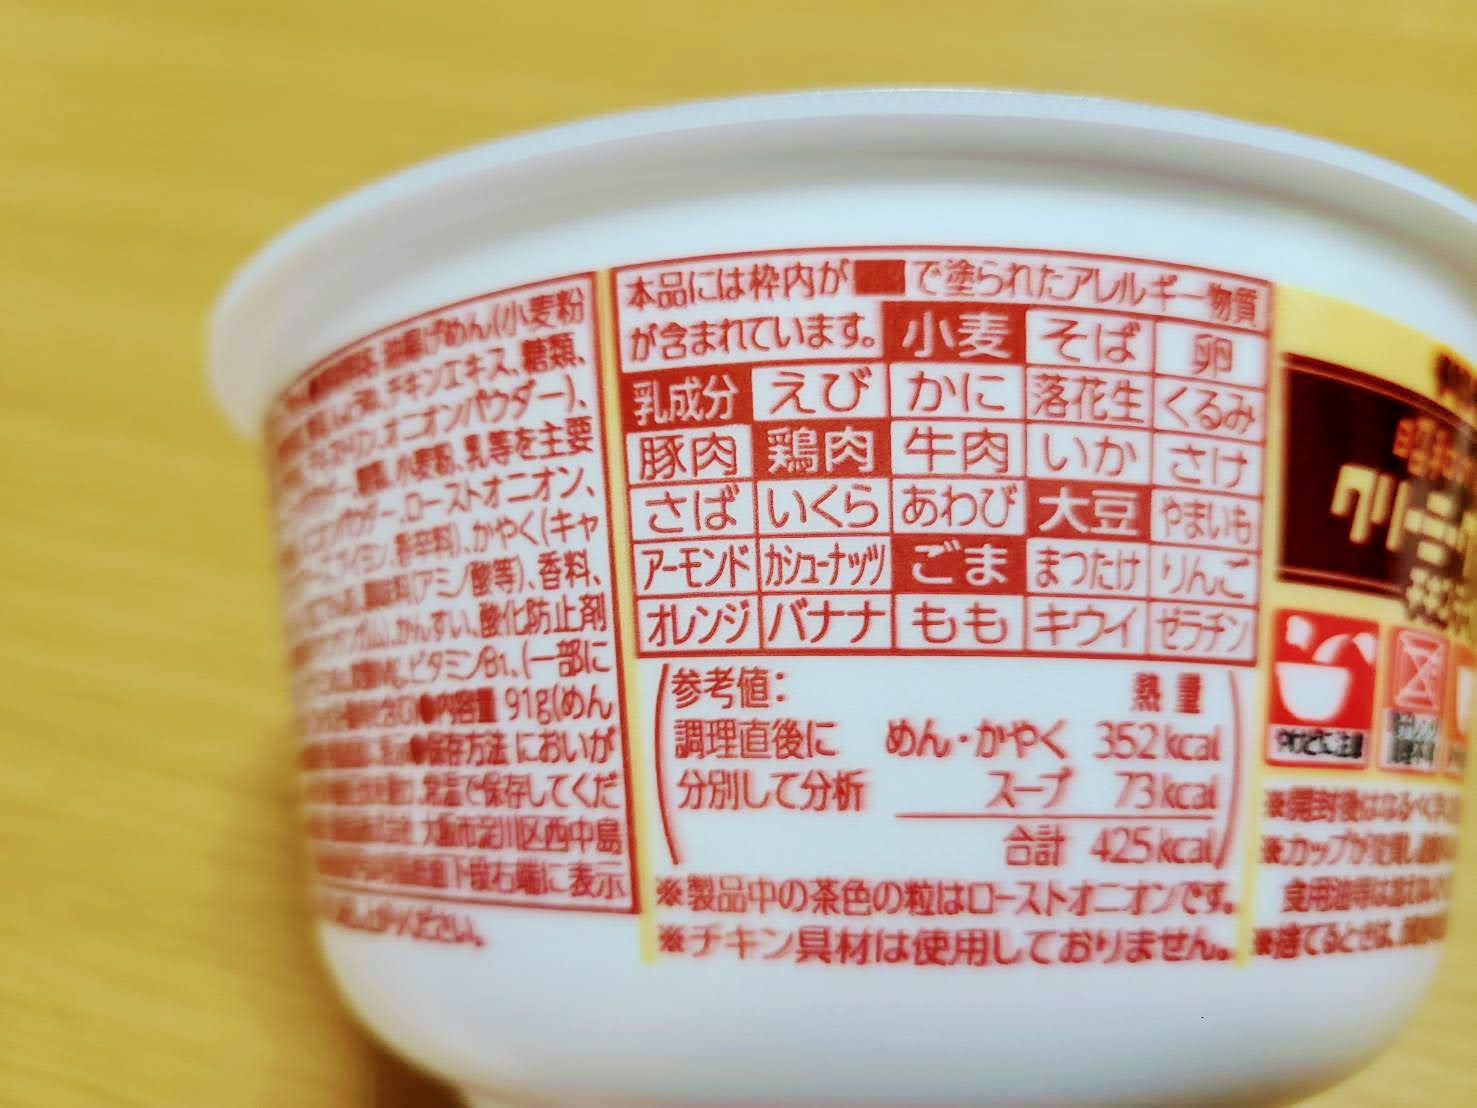 チキンラーメンどんぶり 昭和の洋食ブーム クリーミーグラタン味の栄養成分表示